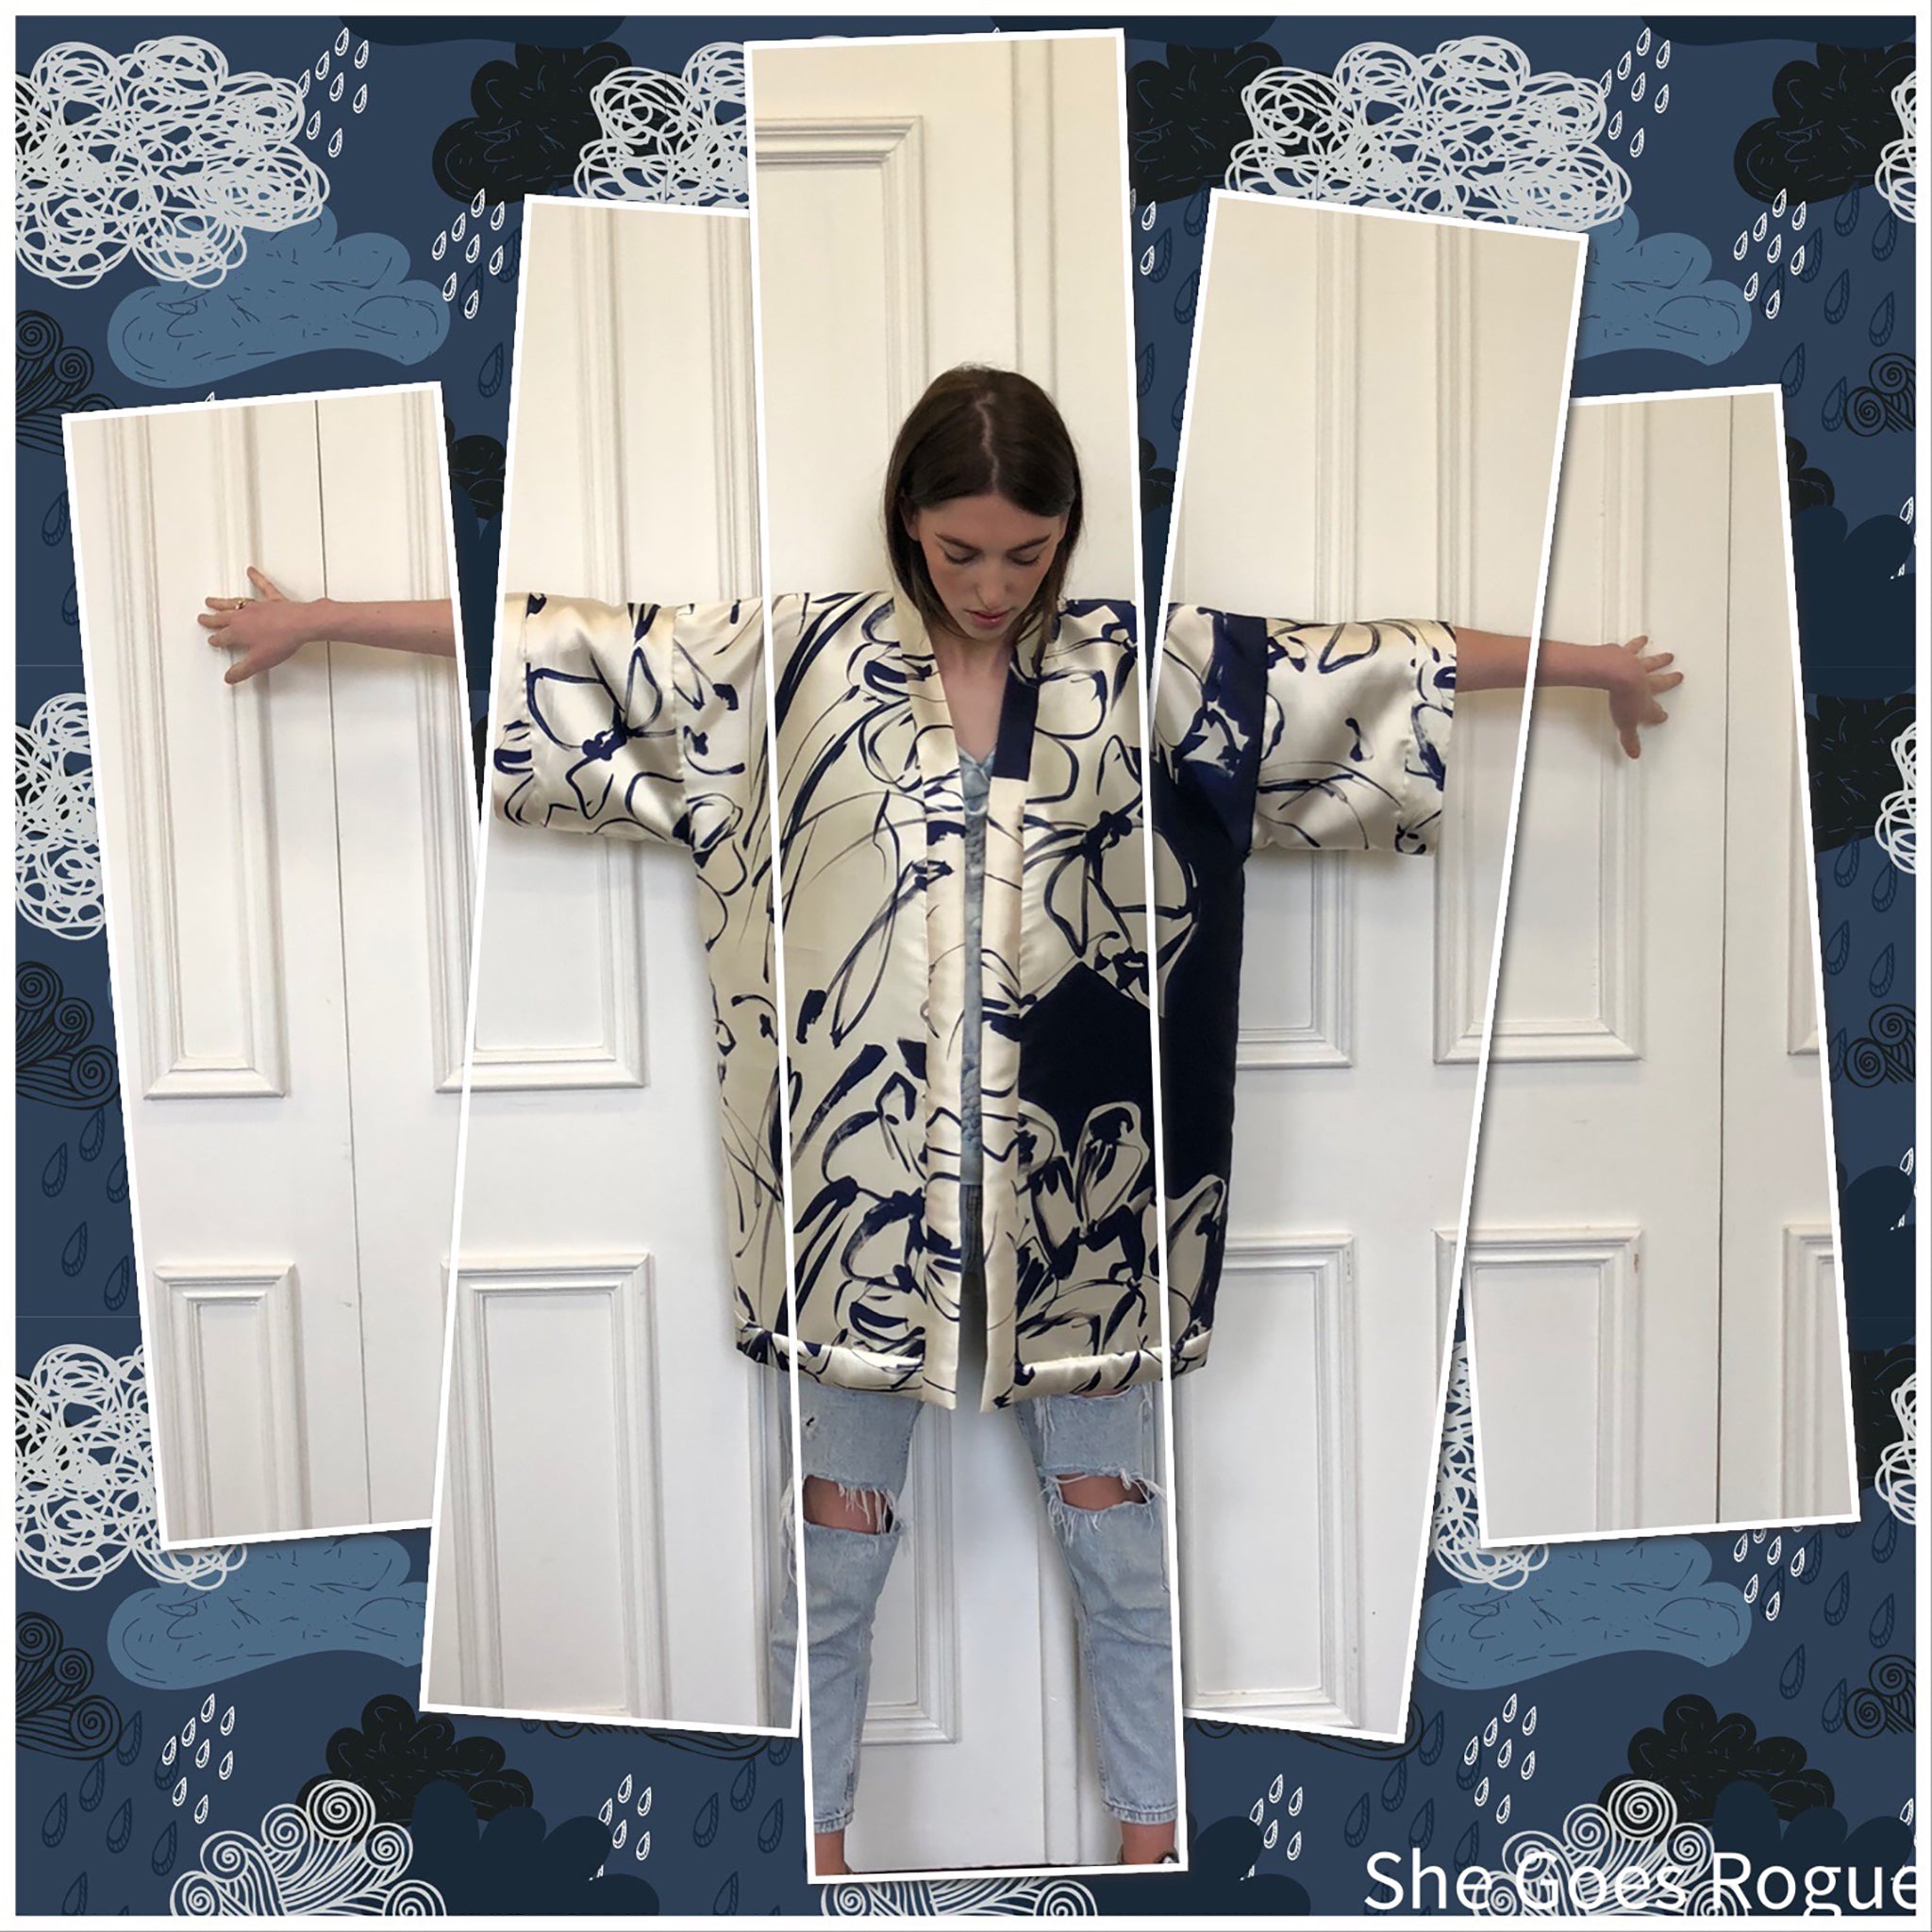 Bespoke Upcycled Vintage Shearling Kimono Jacket -  Ireland